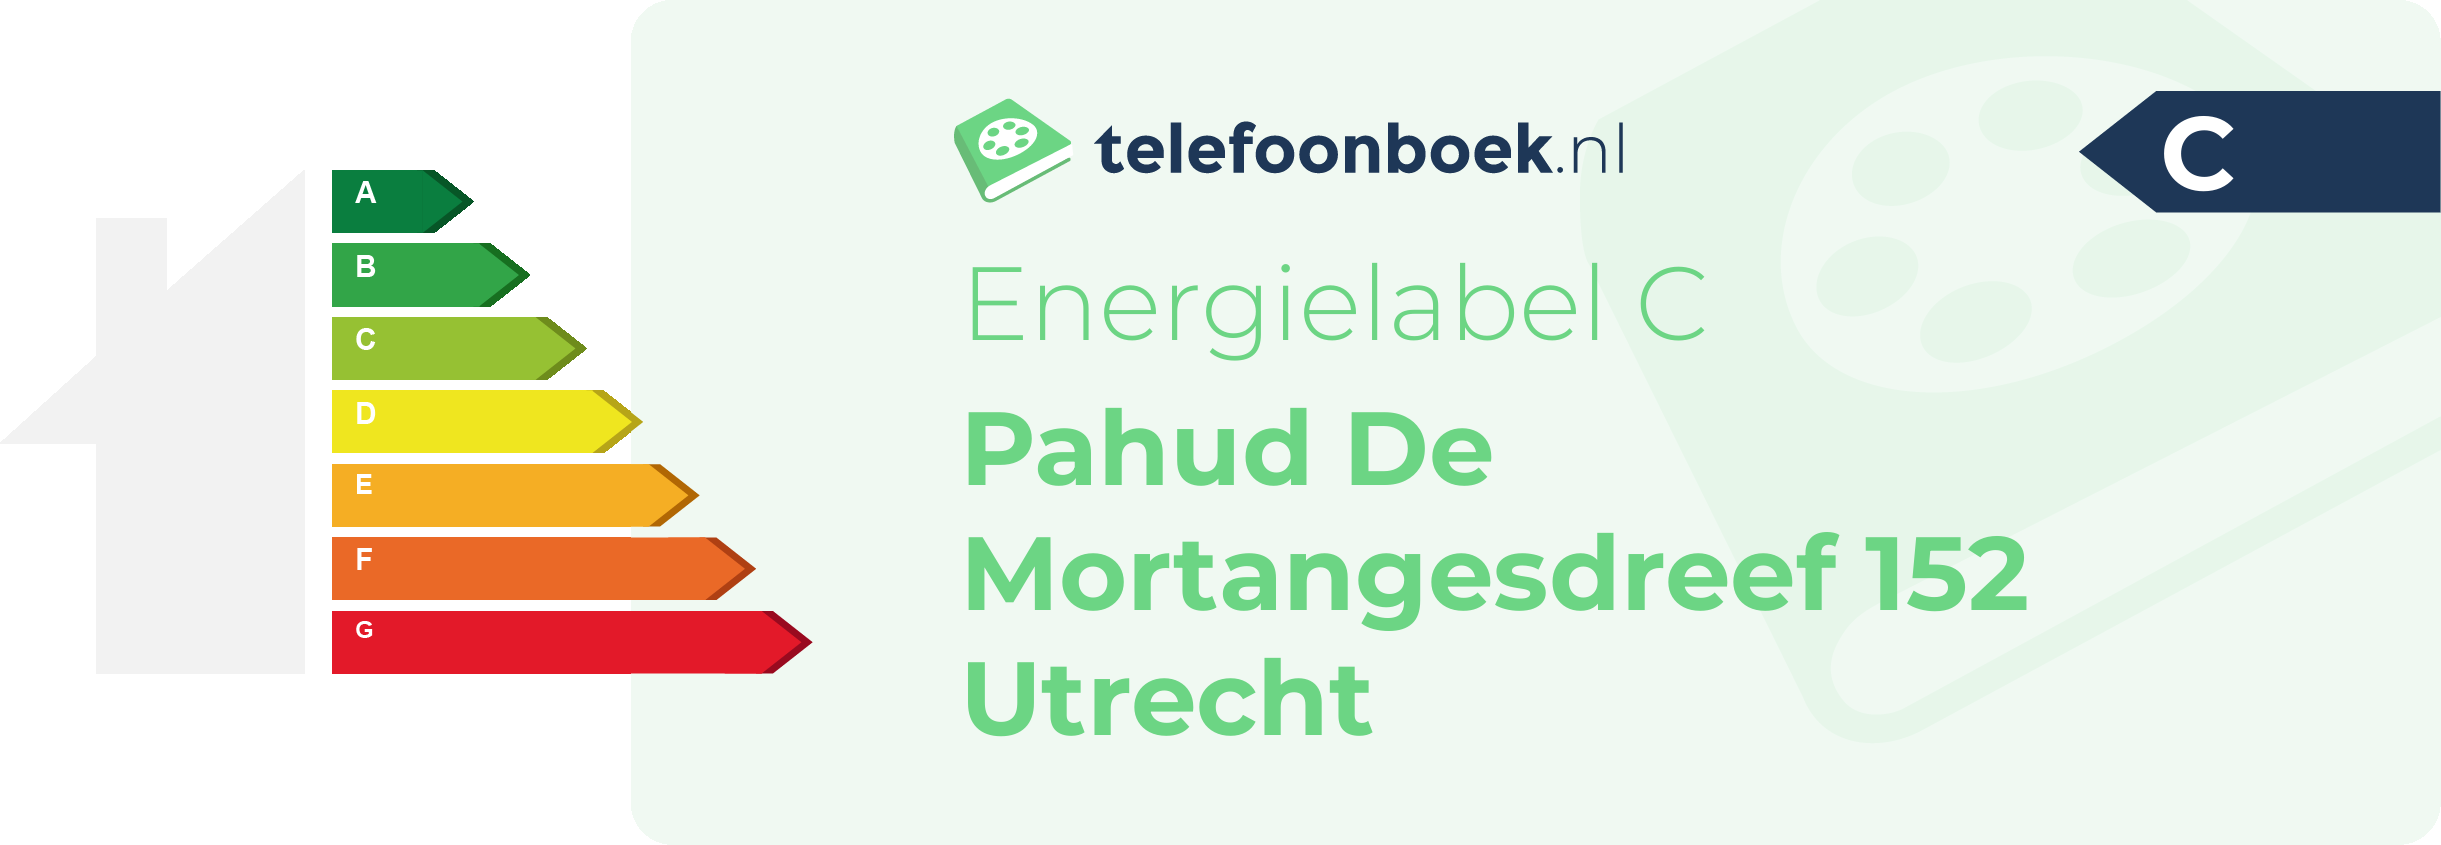 Energielabel Pahud De Mortangesdreef 152 Utrecht